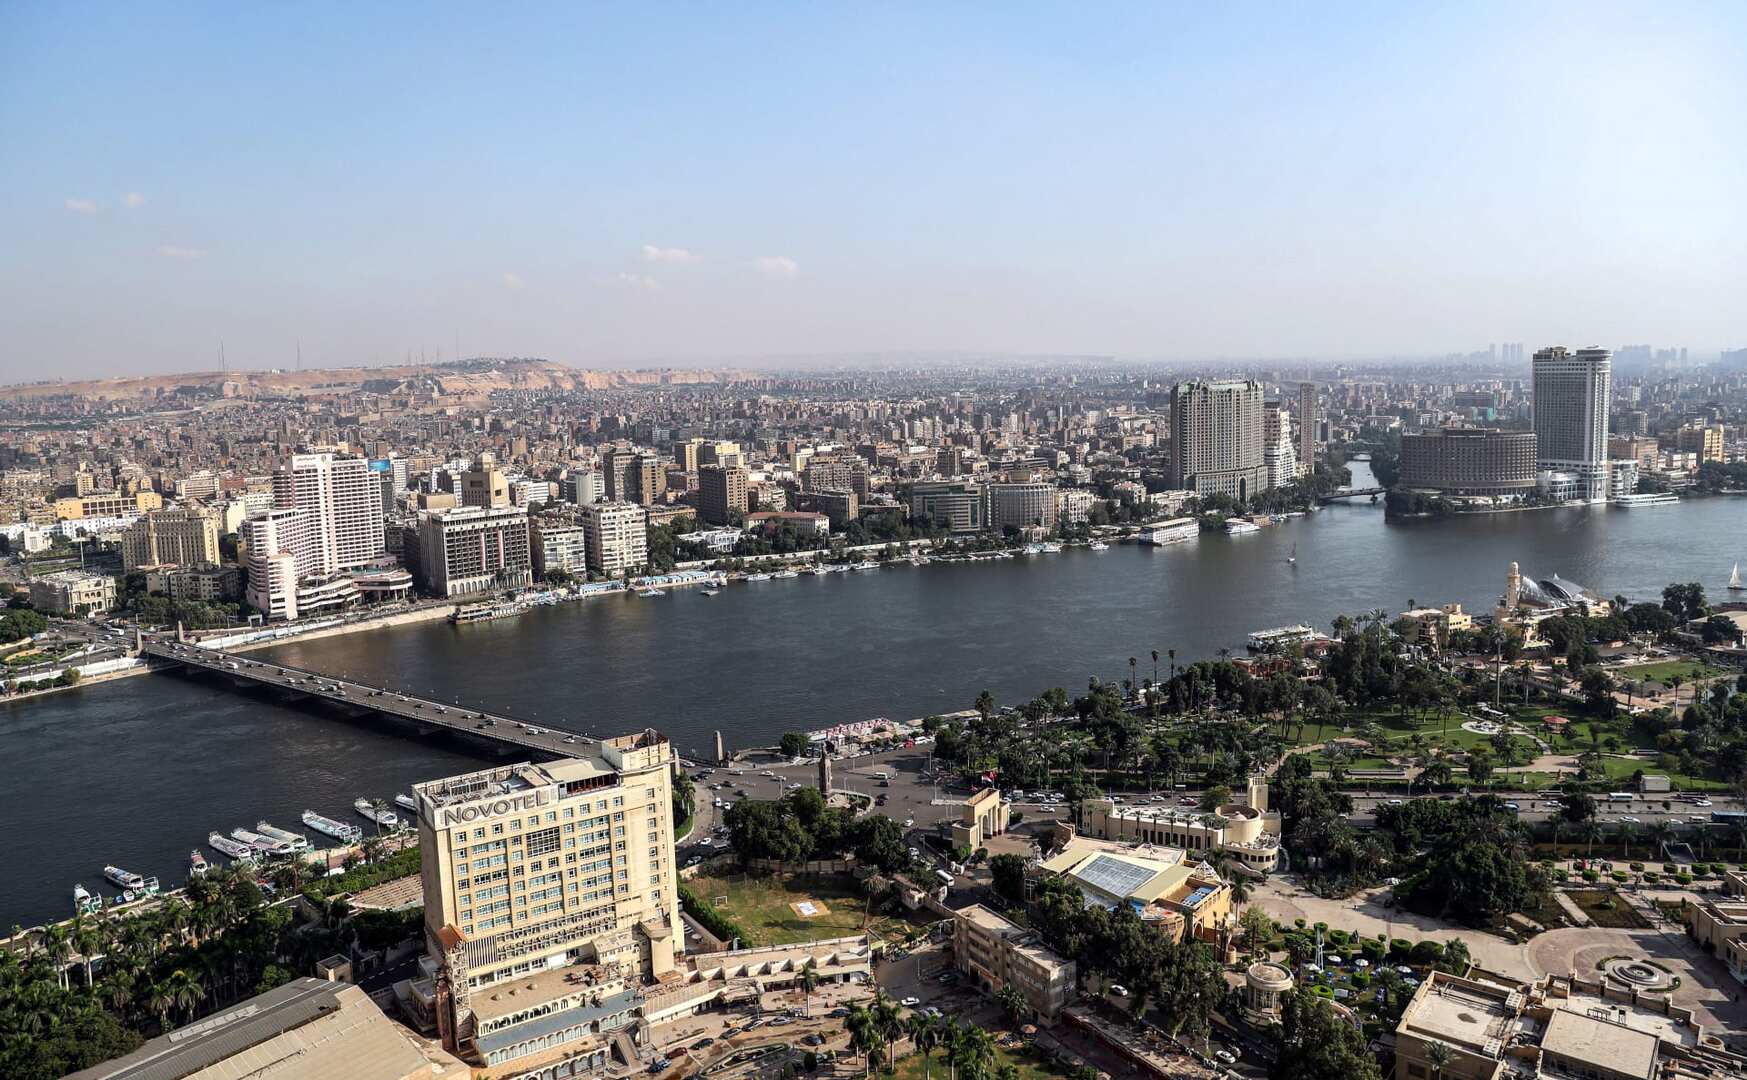 بعد 48 ساعة من الحر الشديد.. الأرصاد المصرية تكشف تطورات مهمة